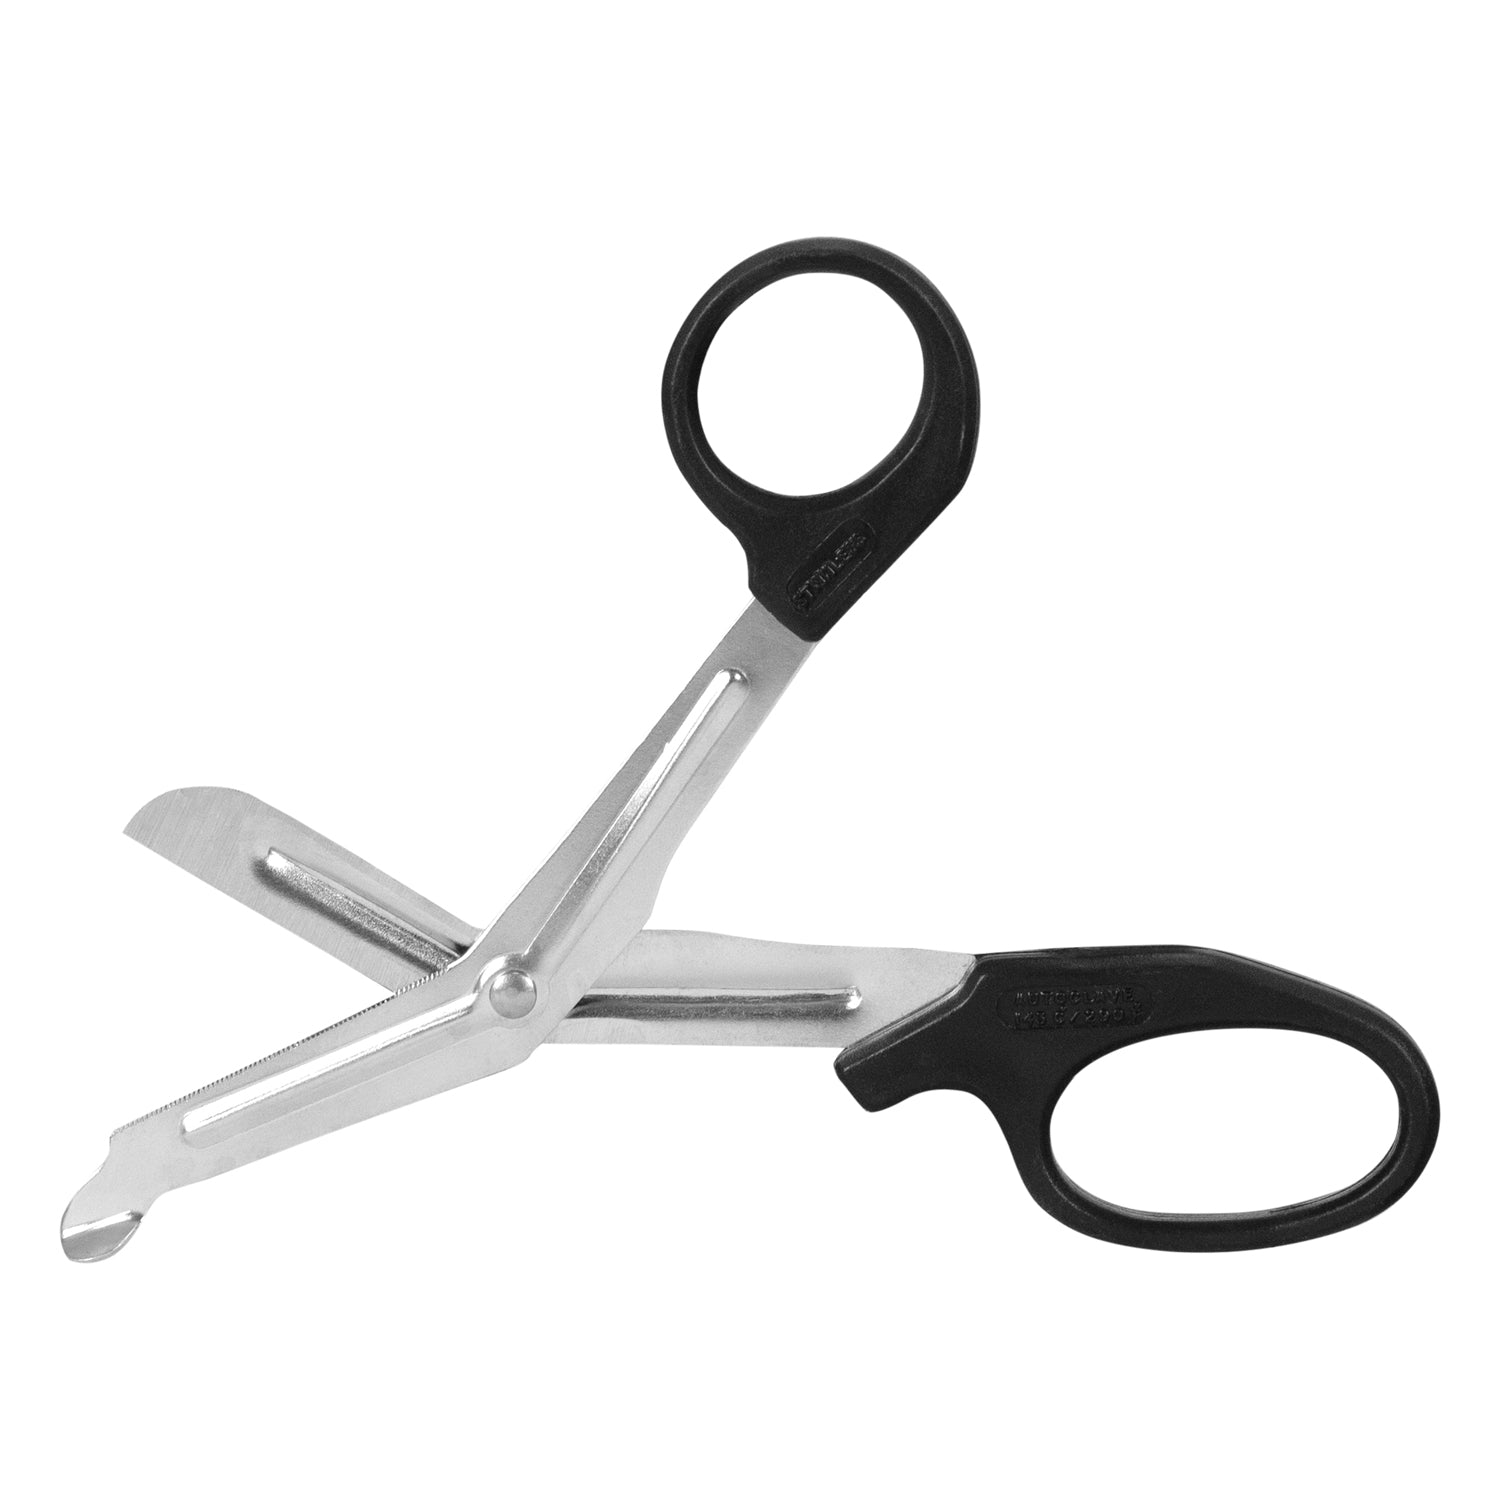 TITANIUM Scissors products for sale